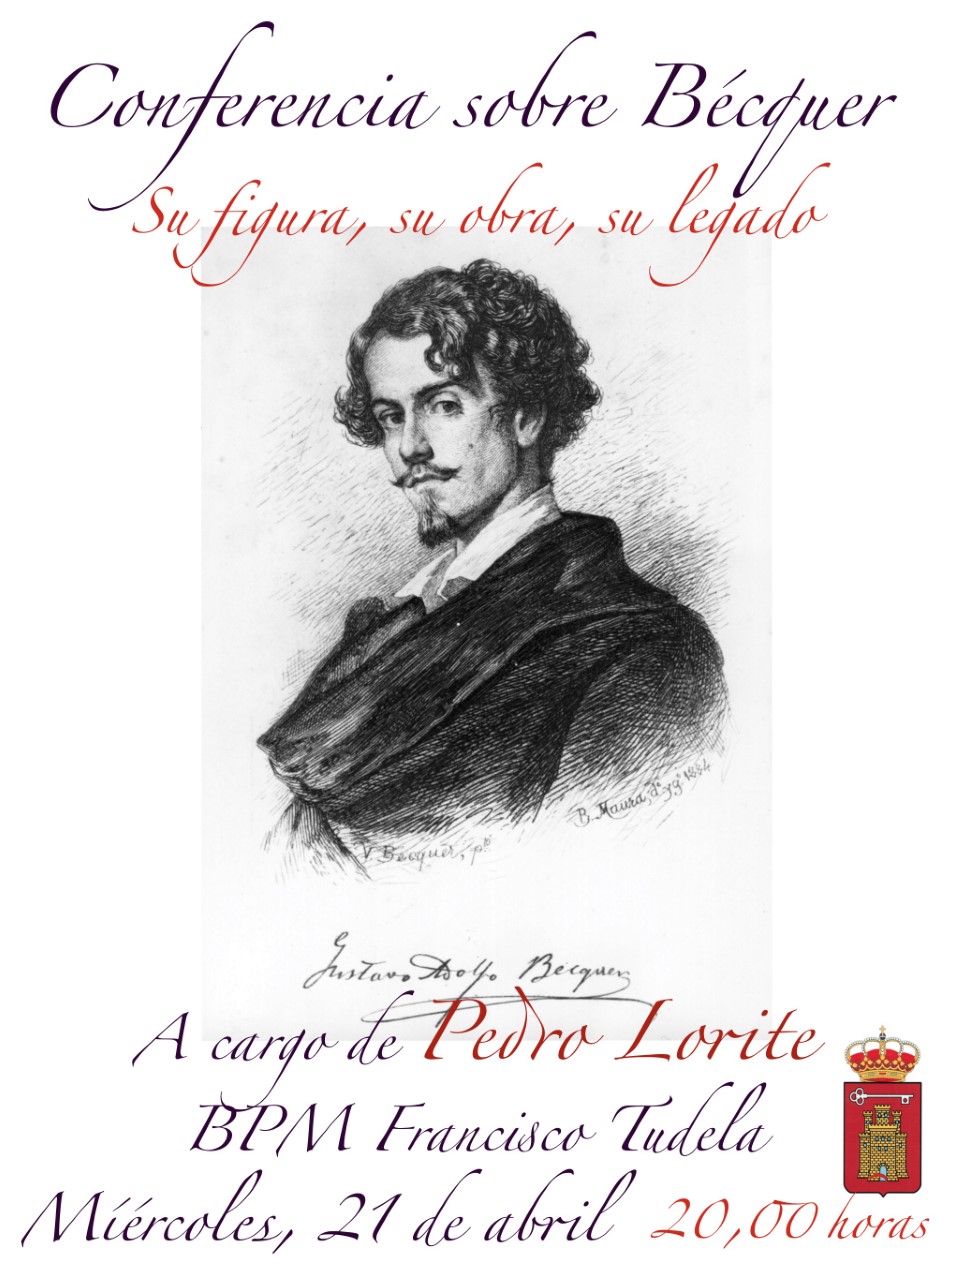 Una conferencia sobre Bécquer por Pedro Lorite